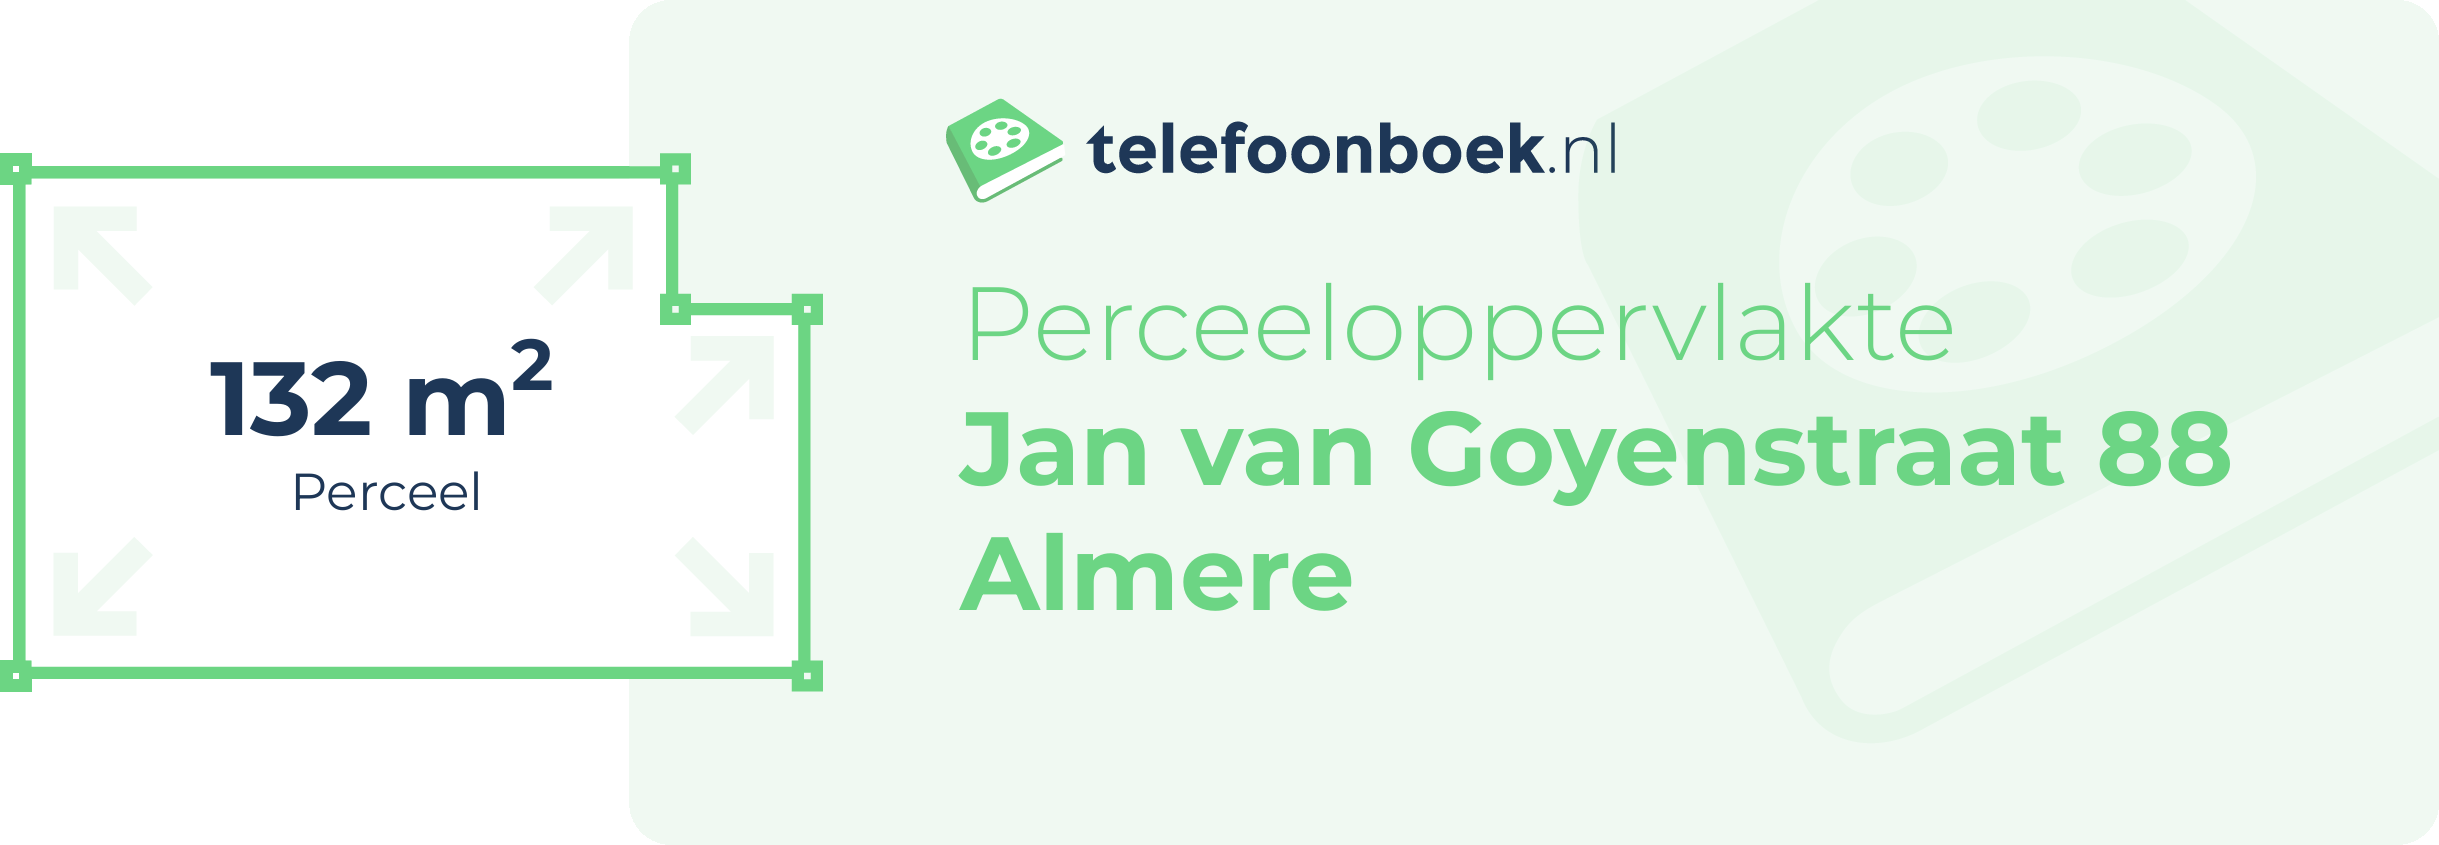 Perceeloppervlakte Jan Van Goyenstraat 88 Almere